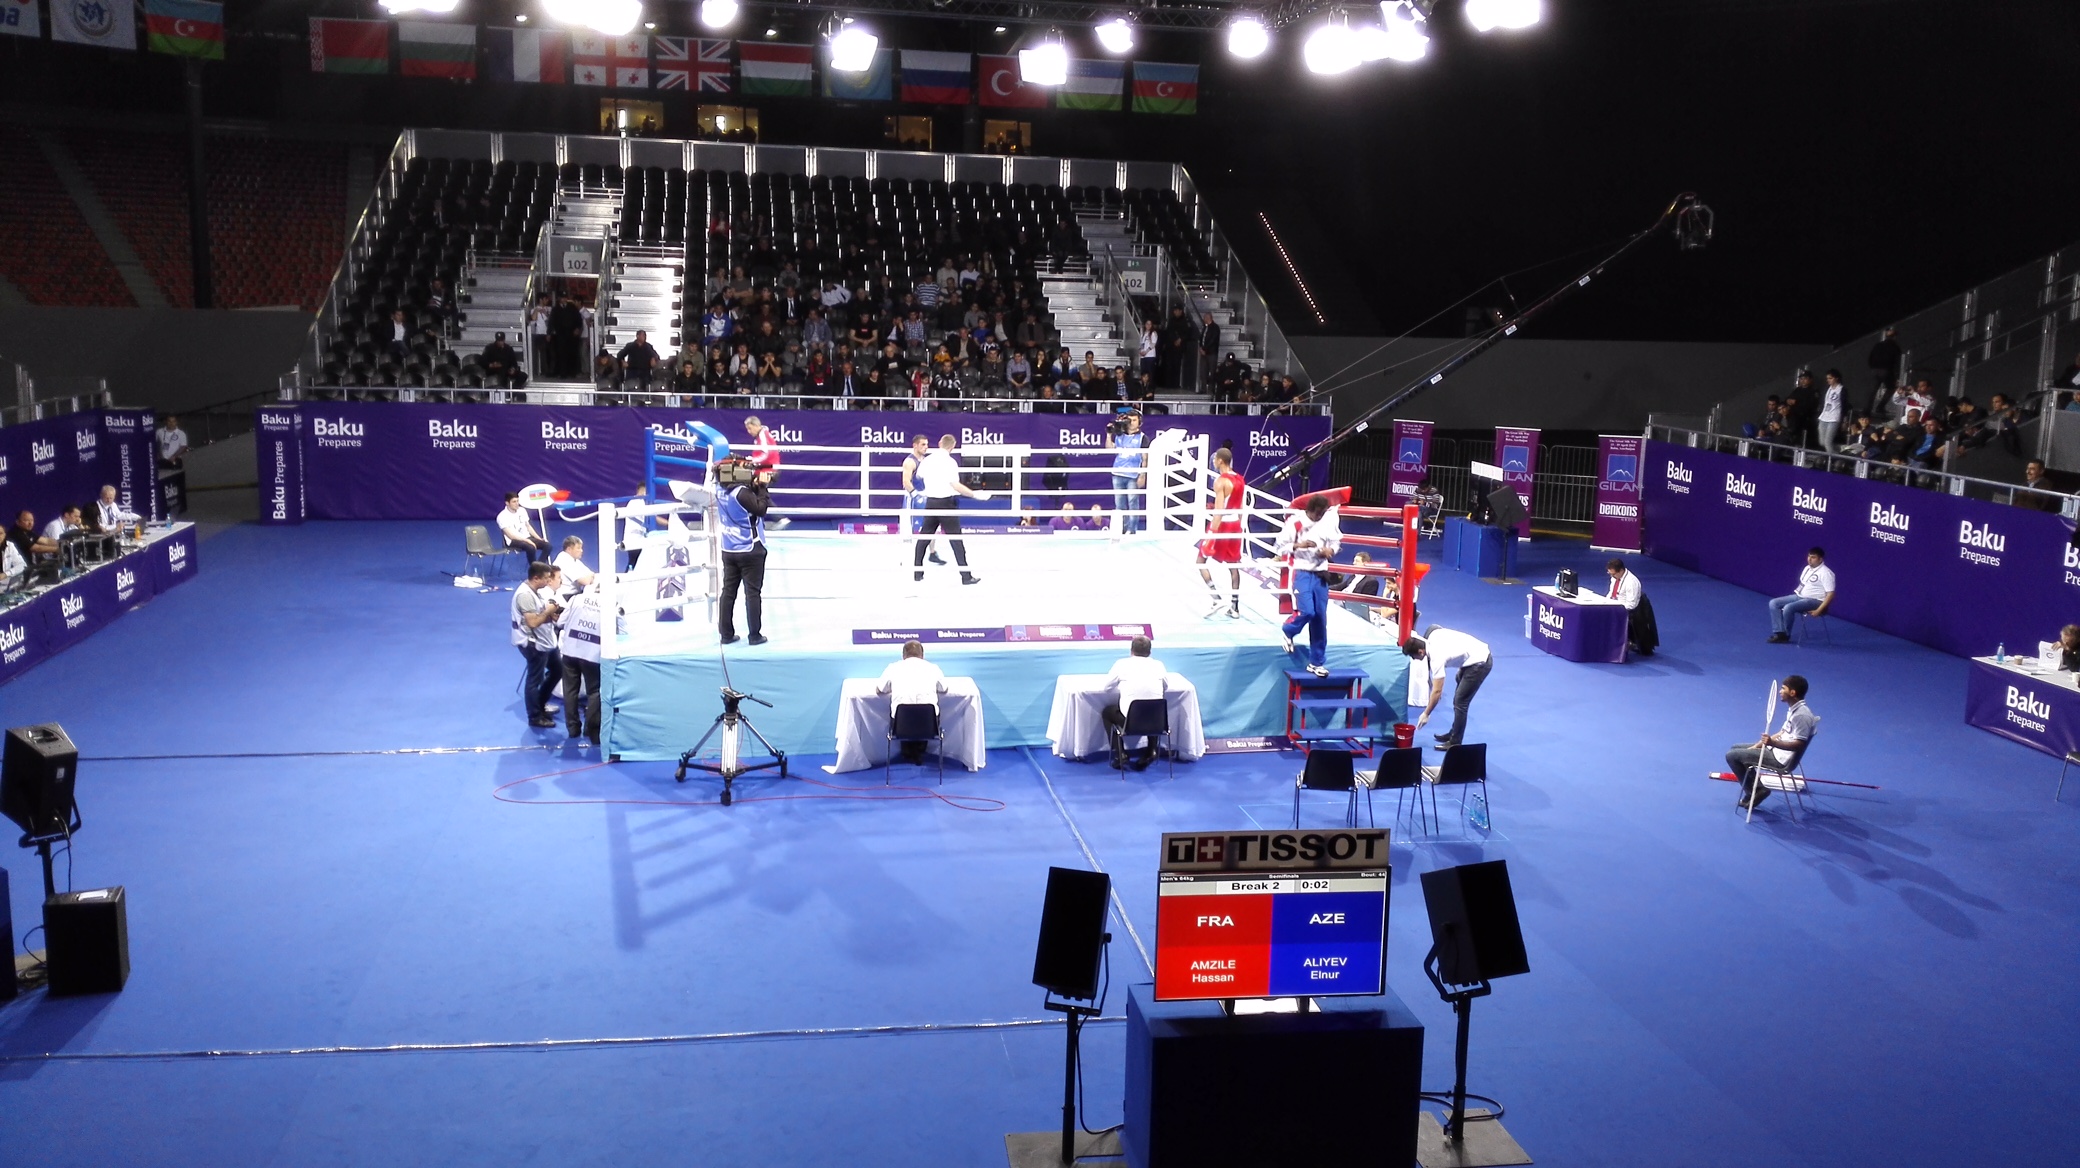 Il Torneo Mondiale di Qualificazione Olimpica avrà luogo a Baku dal 14 al 26 Giugno pv #ItaBoxing #Noisiamoenergia #Roadtorio